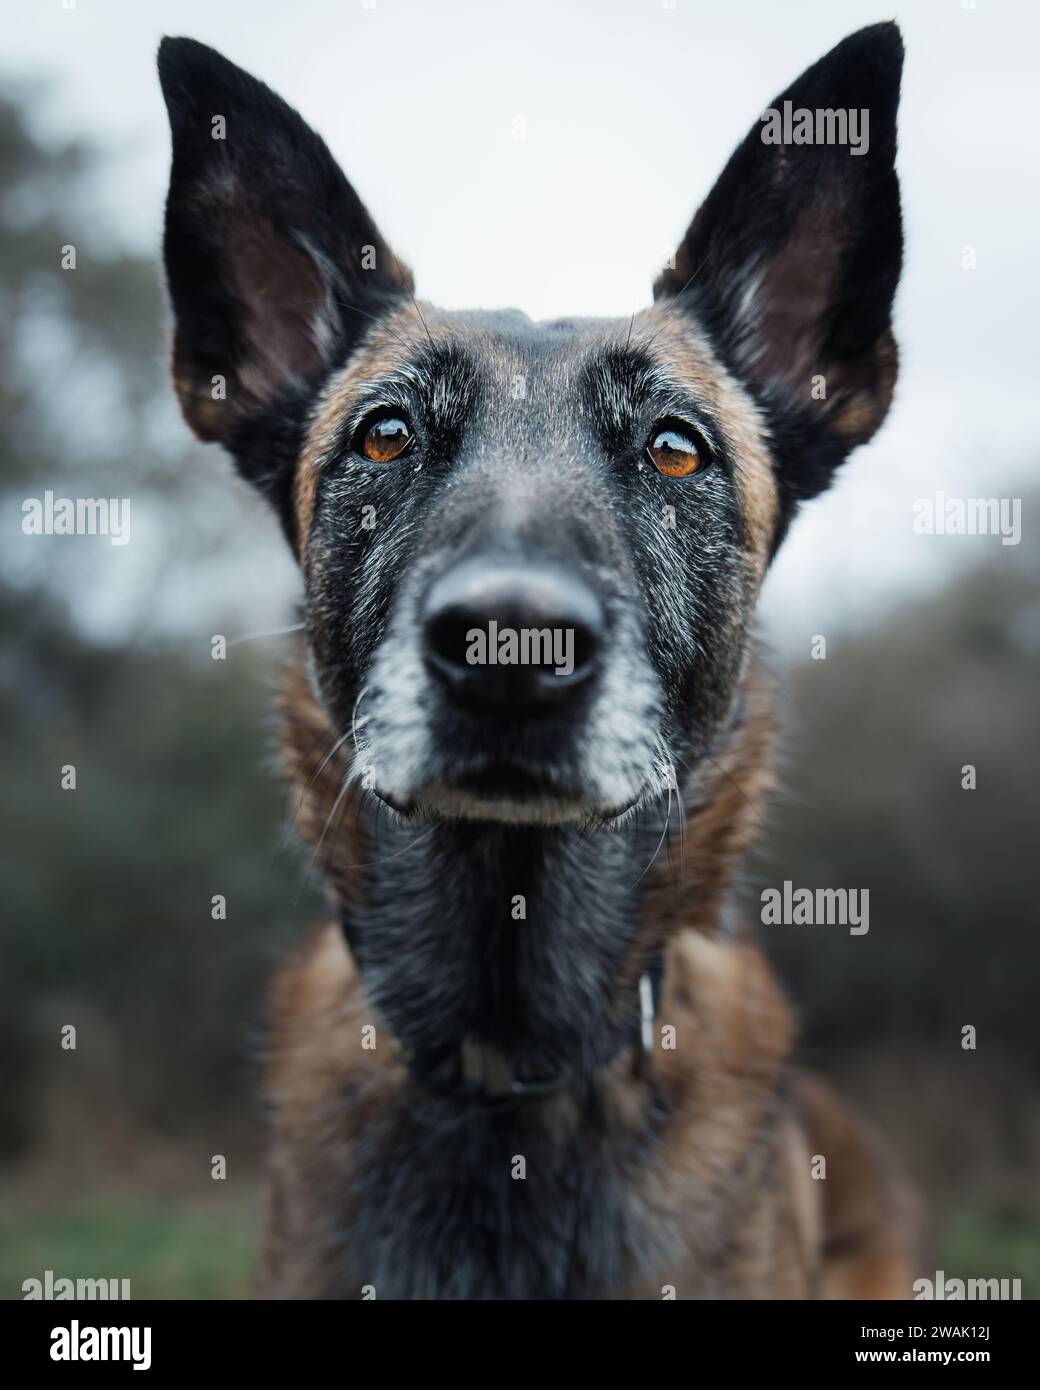 Ein brauner und schwarzer Hund blickt direkt in die Kamera, die Augen sind offen und wachsam Stockfoto